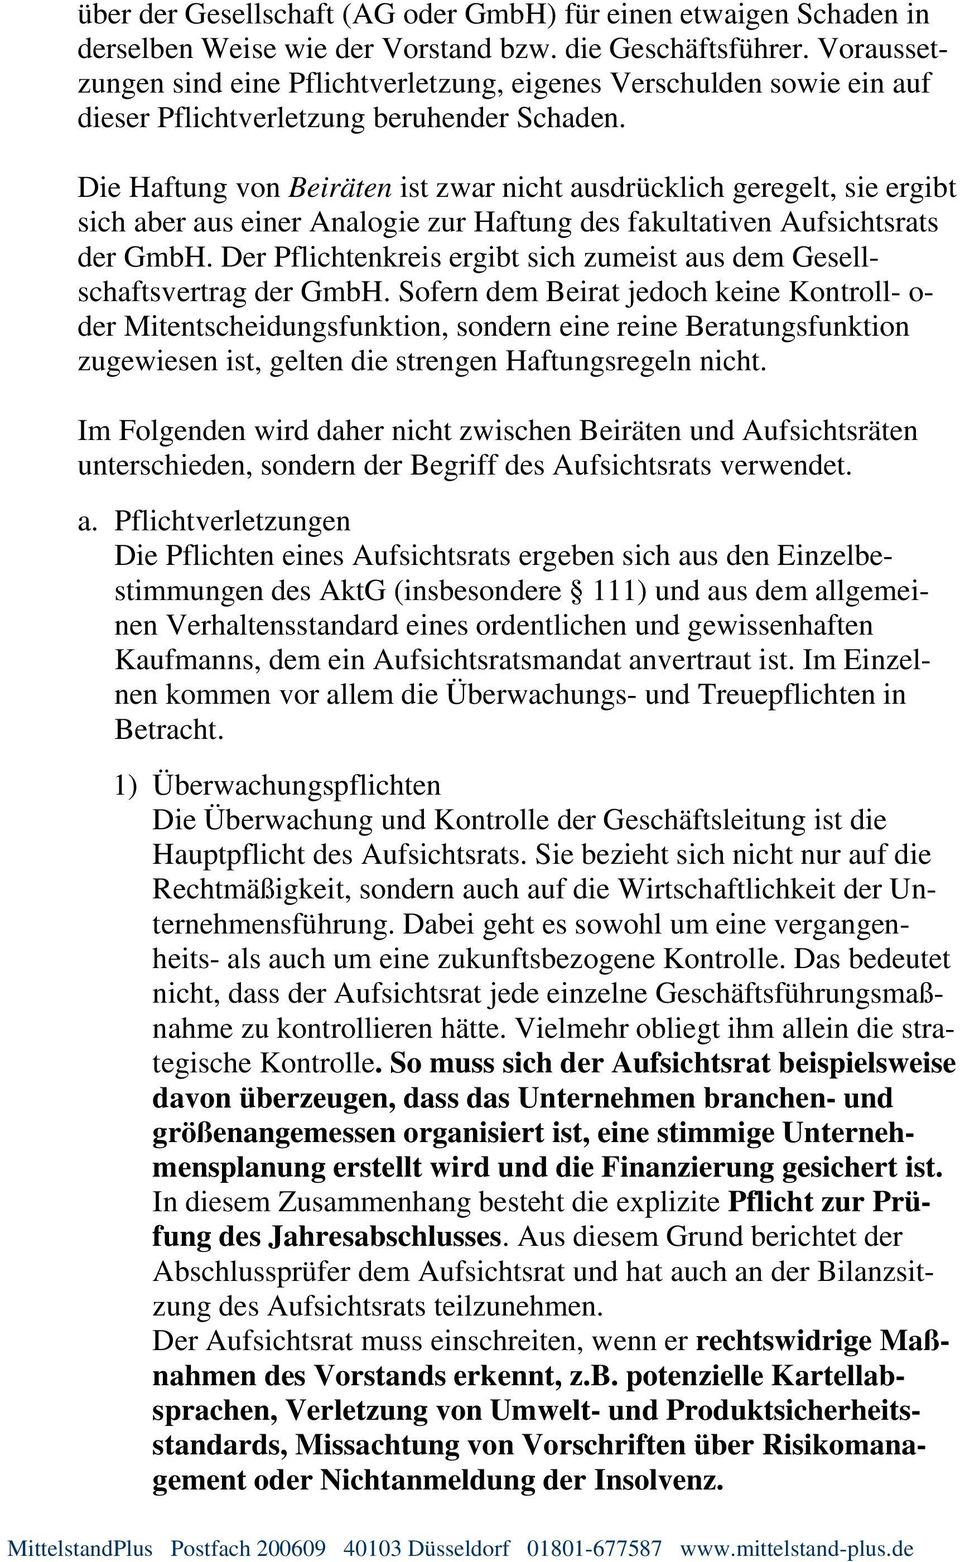 Die Haftung von Beiräten ist zwar nicht ausdrücklich geregelt, sie ergibt sich aber aus einer Analogie zur Haftung des fakultativen Aufsichtsrats der GmbH.